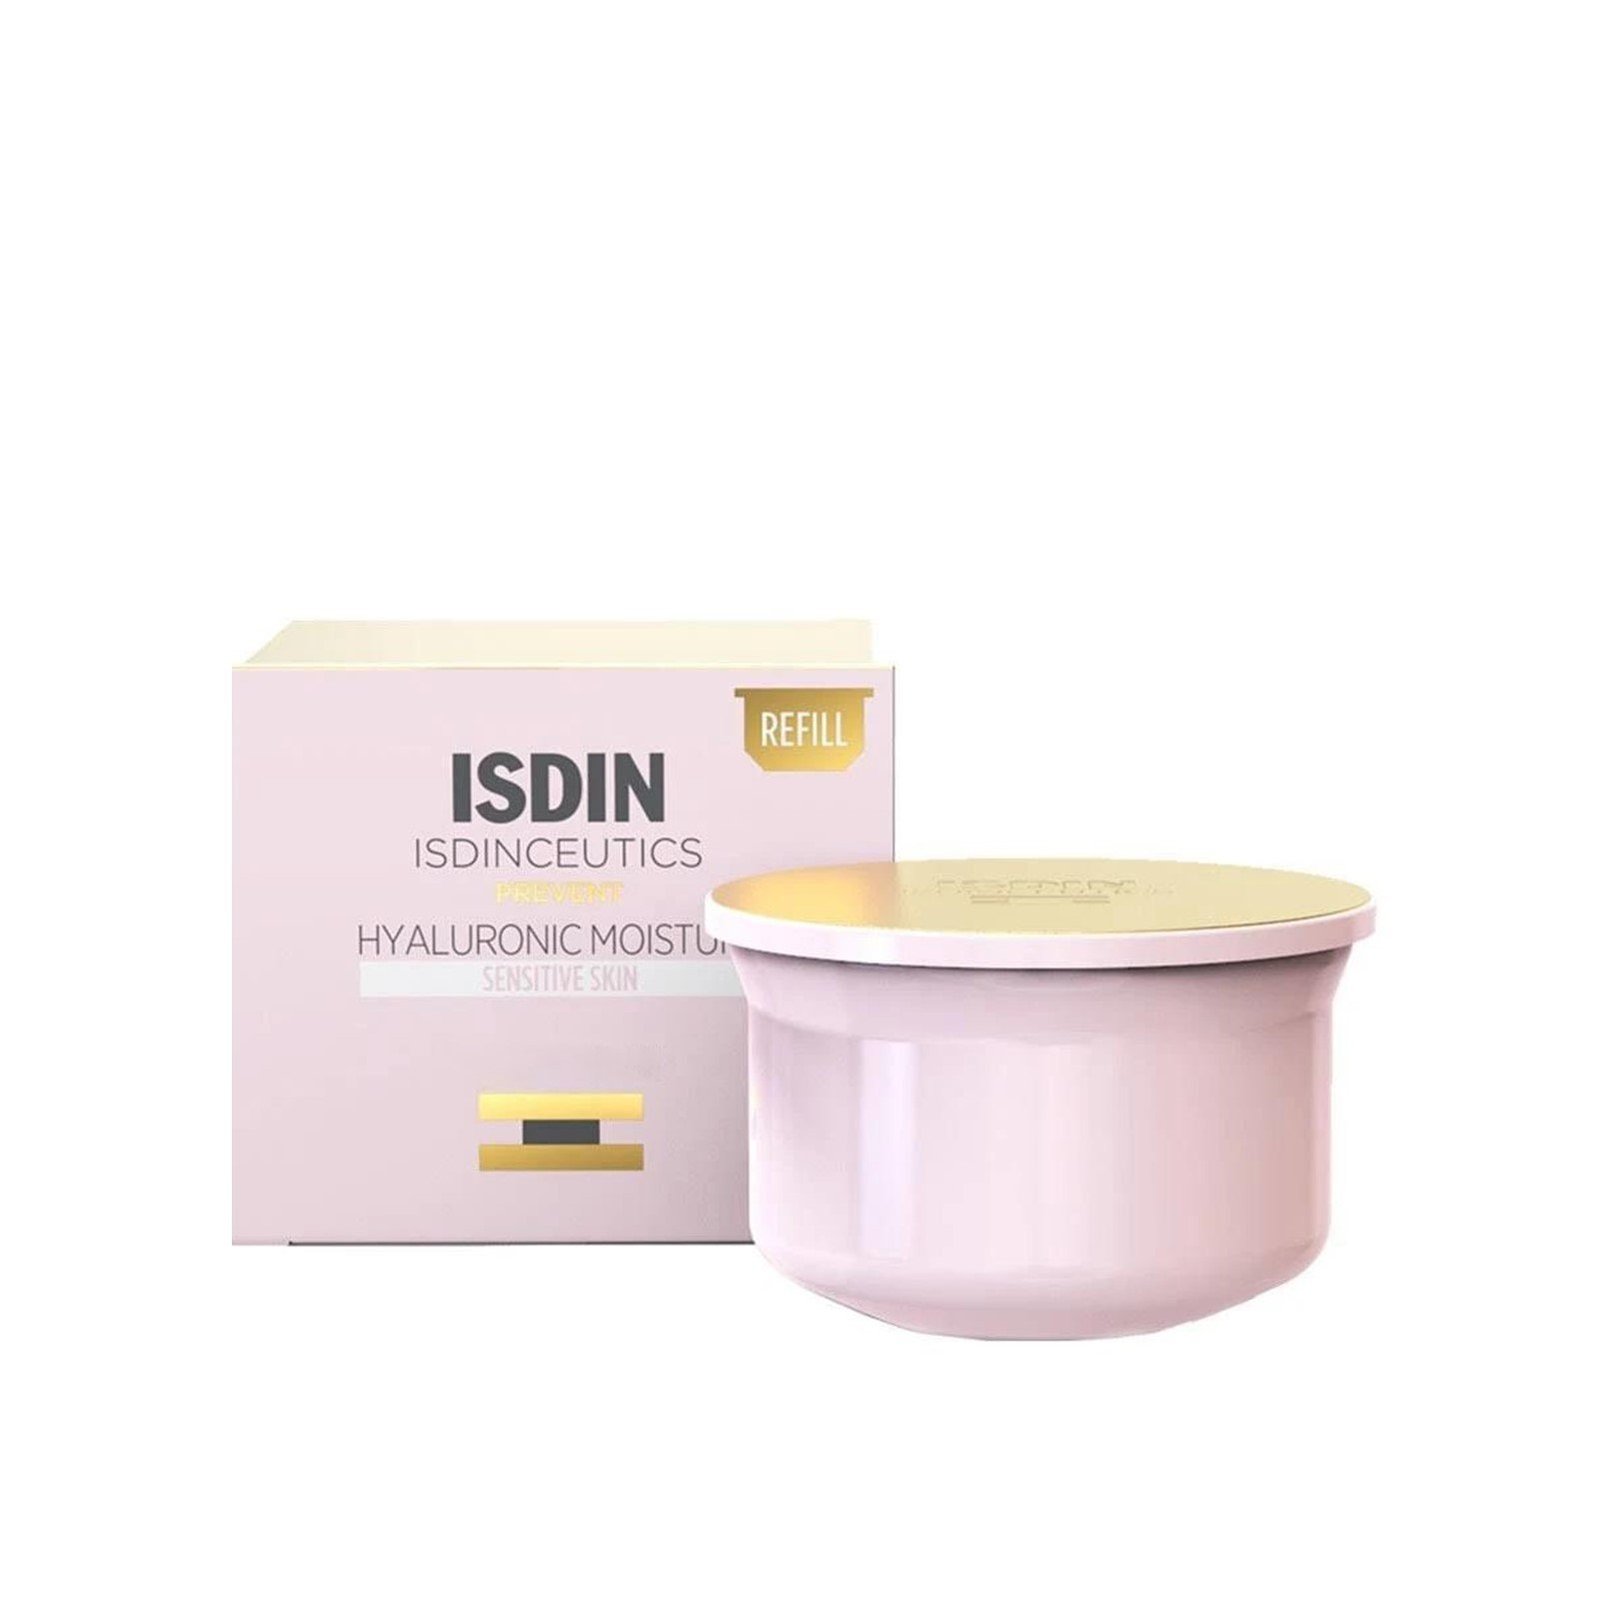 ISDINCEUTICS Hyaluronic Moisture Cream Sensitive Skin Refill 50g (1.76 oz)